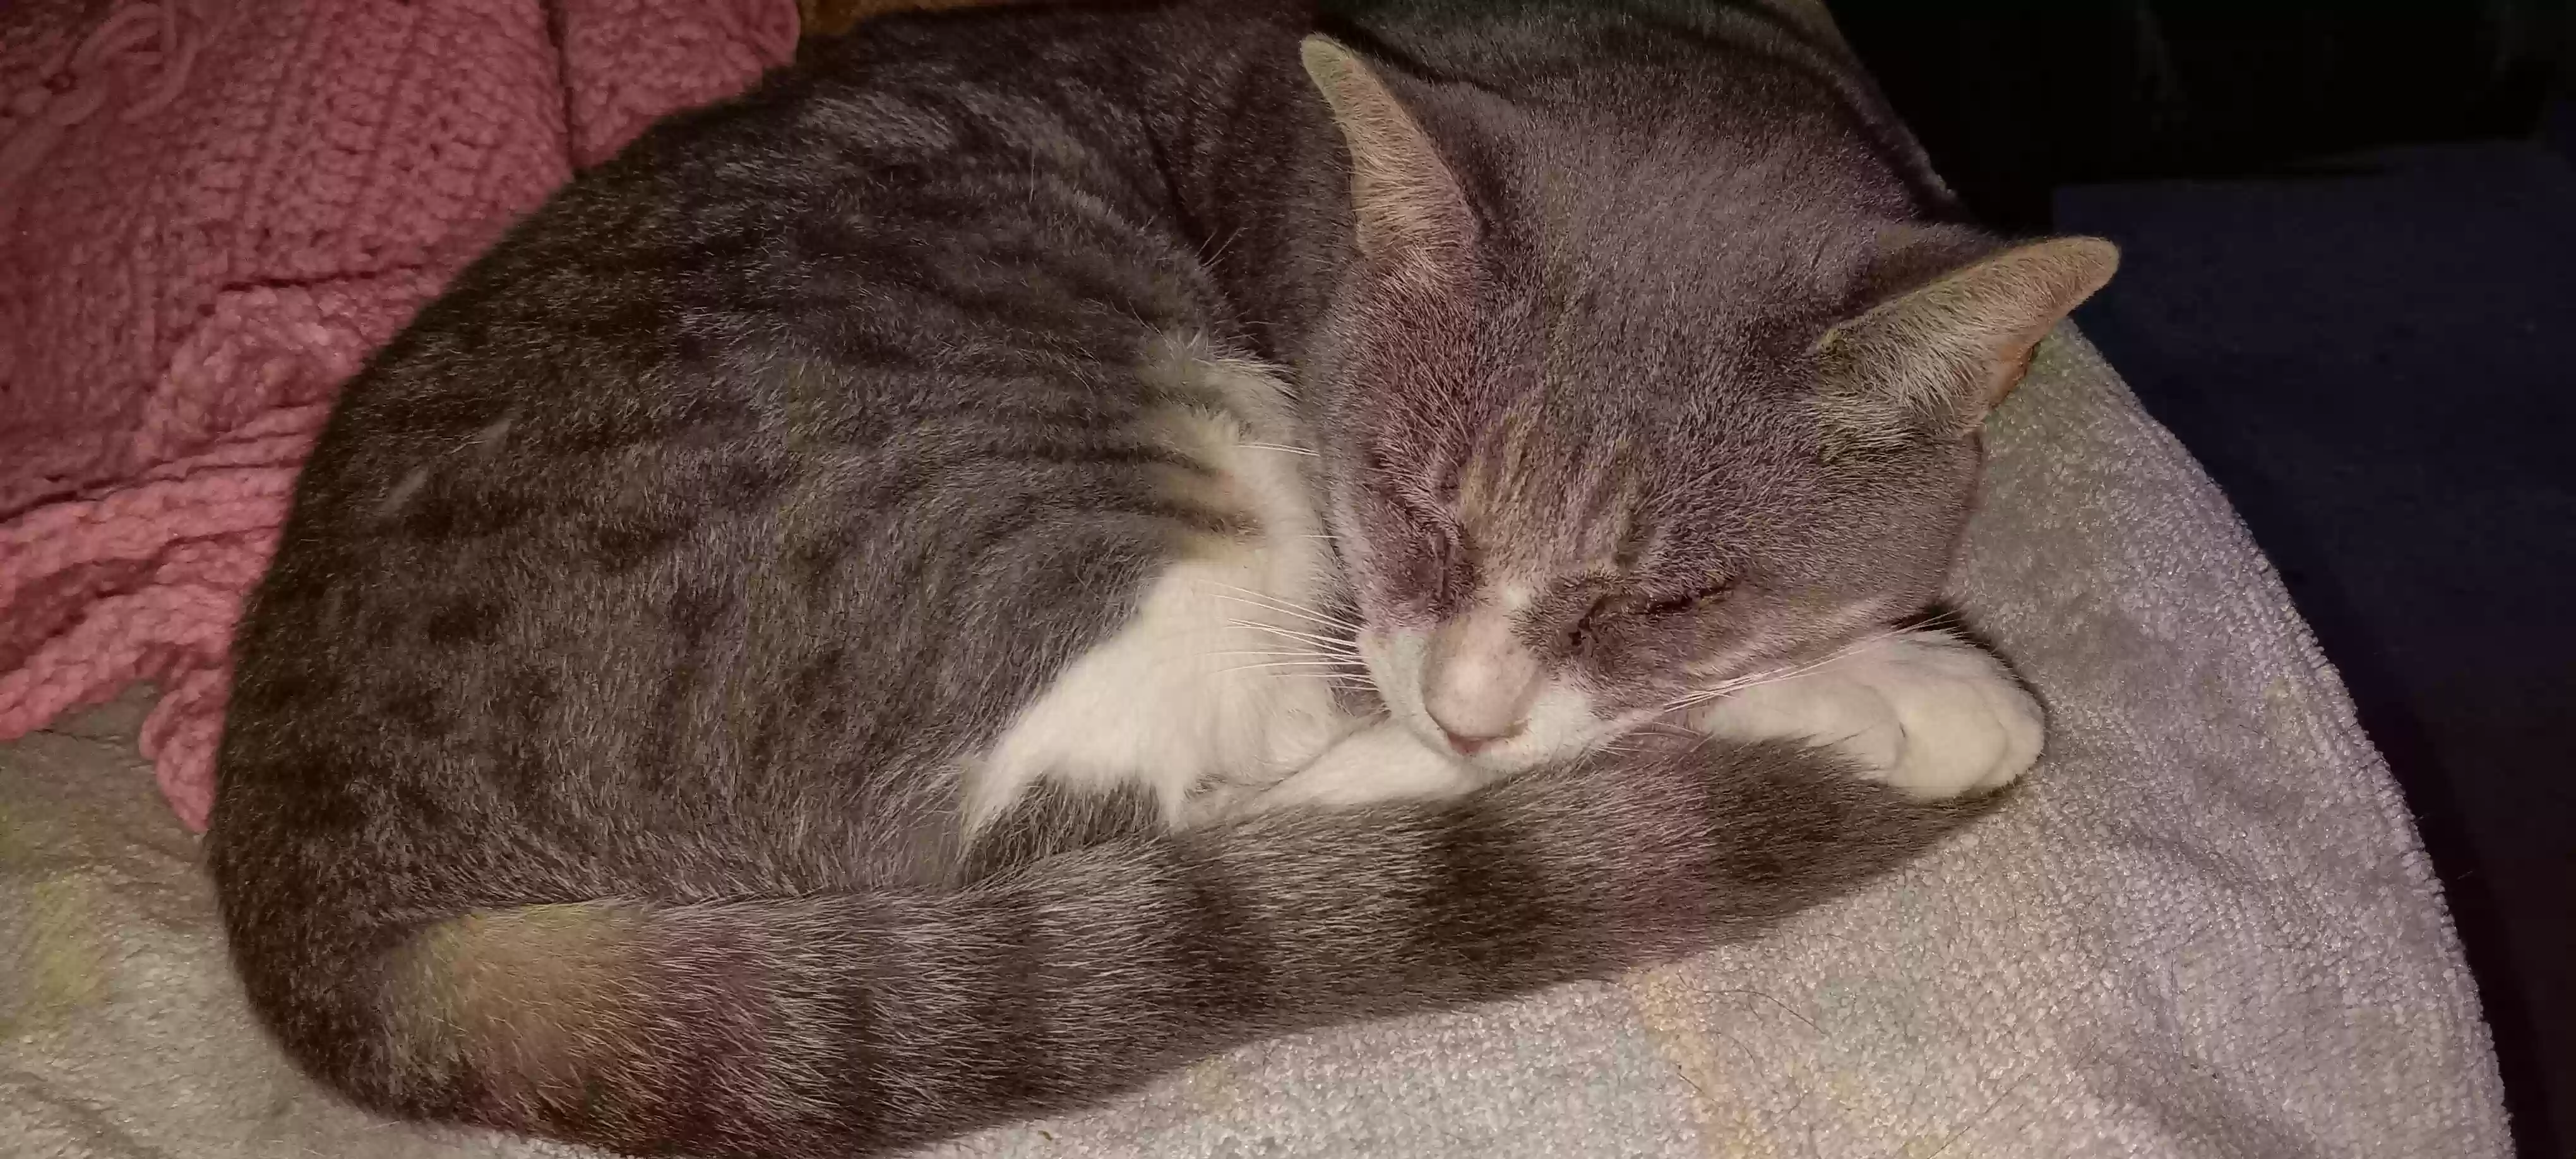 adoptable Cat in Greenbush,VA named Nico